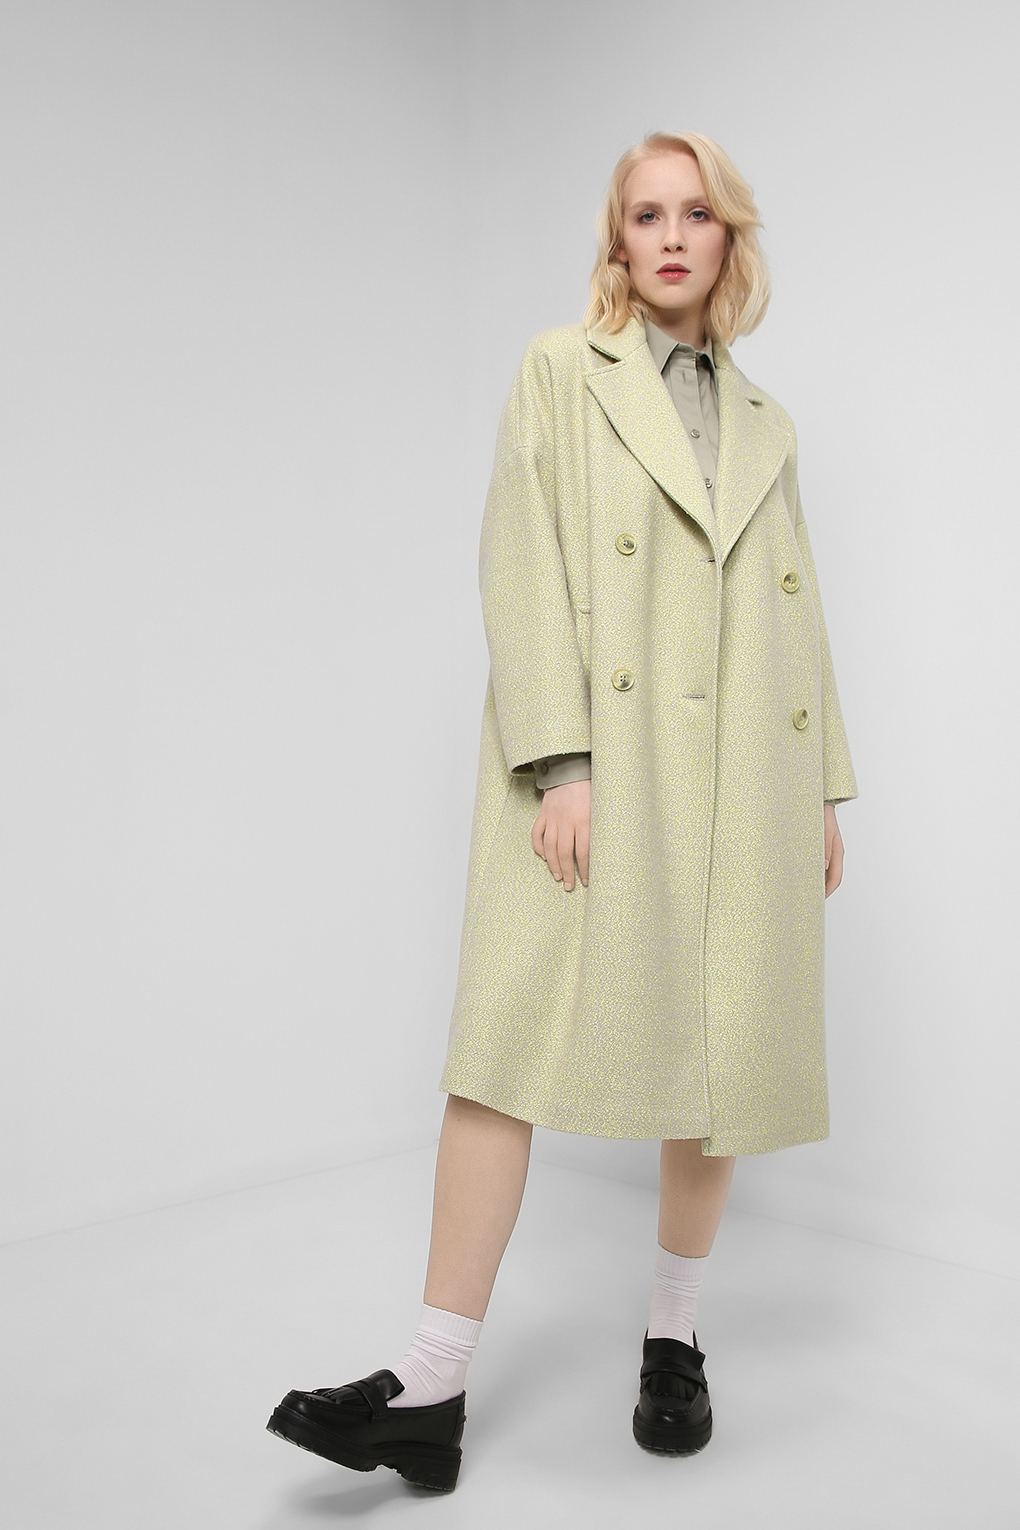 Пальто женское Belucci BL22016160 желтое 44 RU